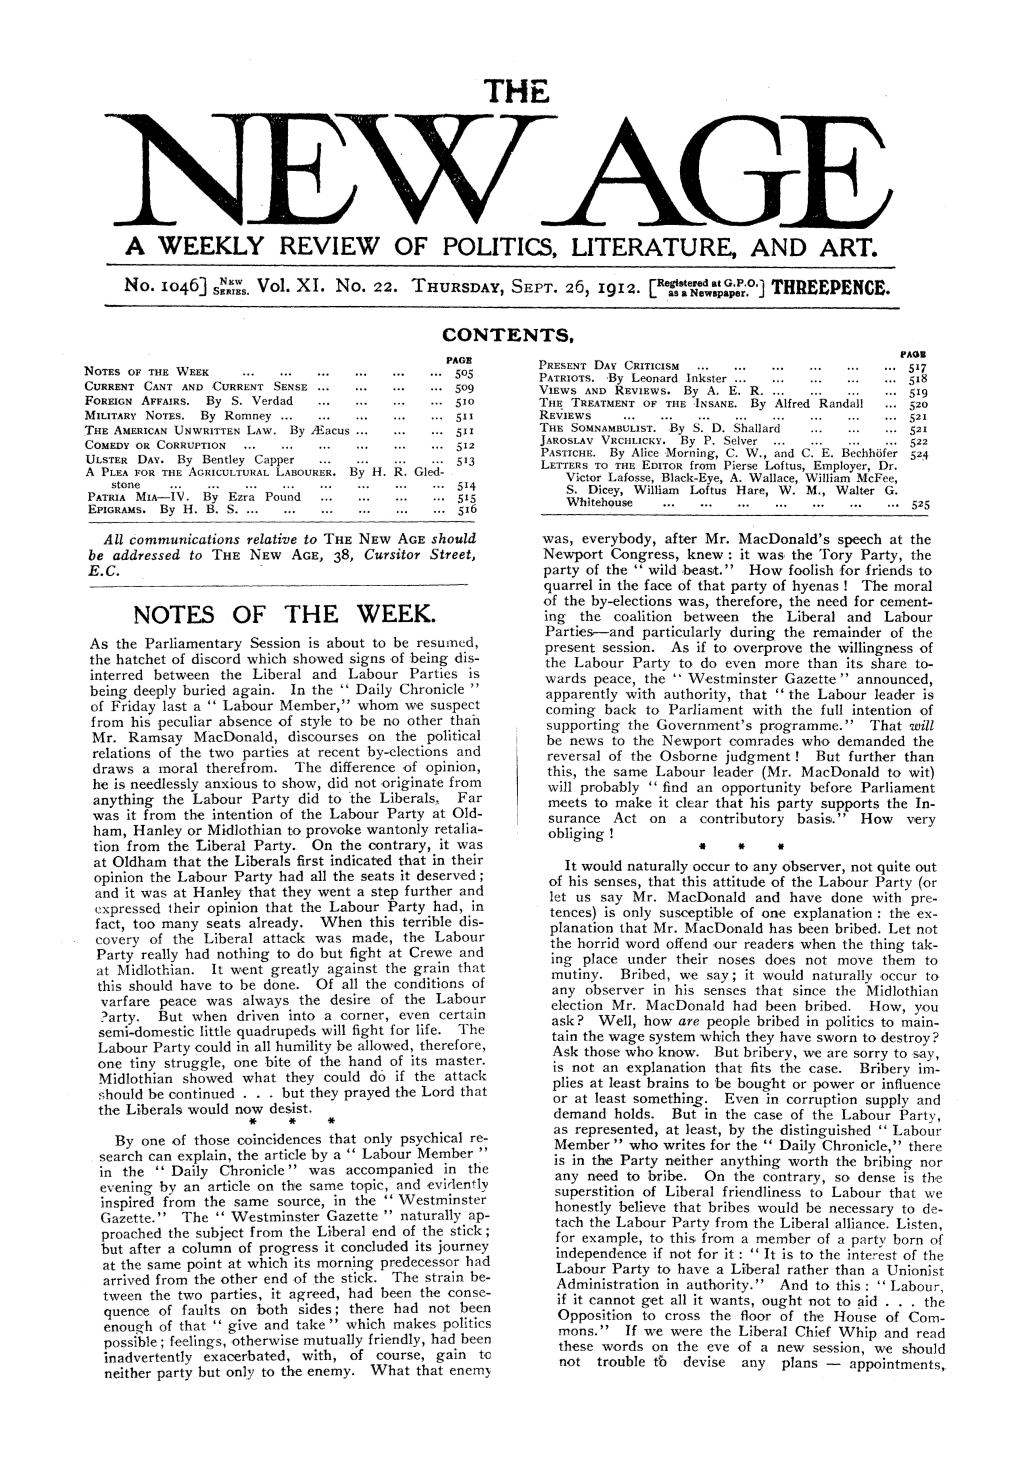 New Age, Vol. 11, No.22, Sept. 26, 1912